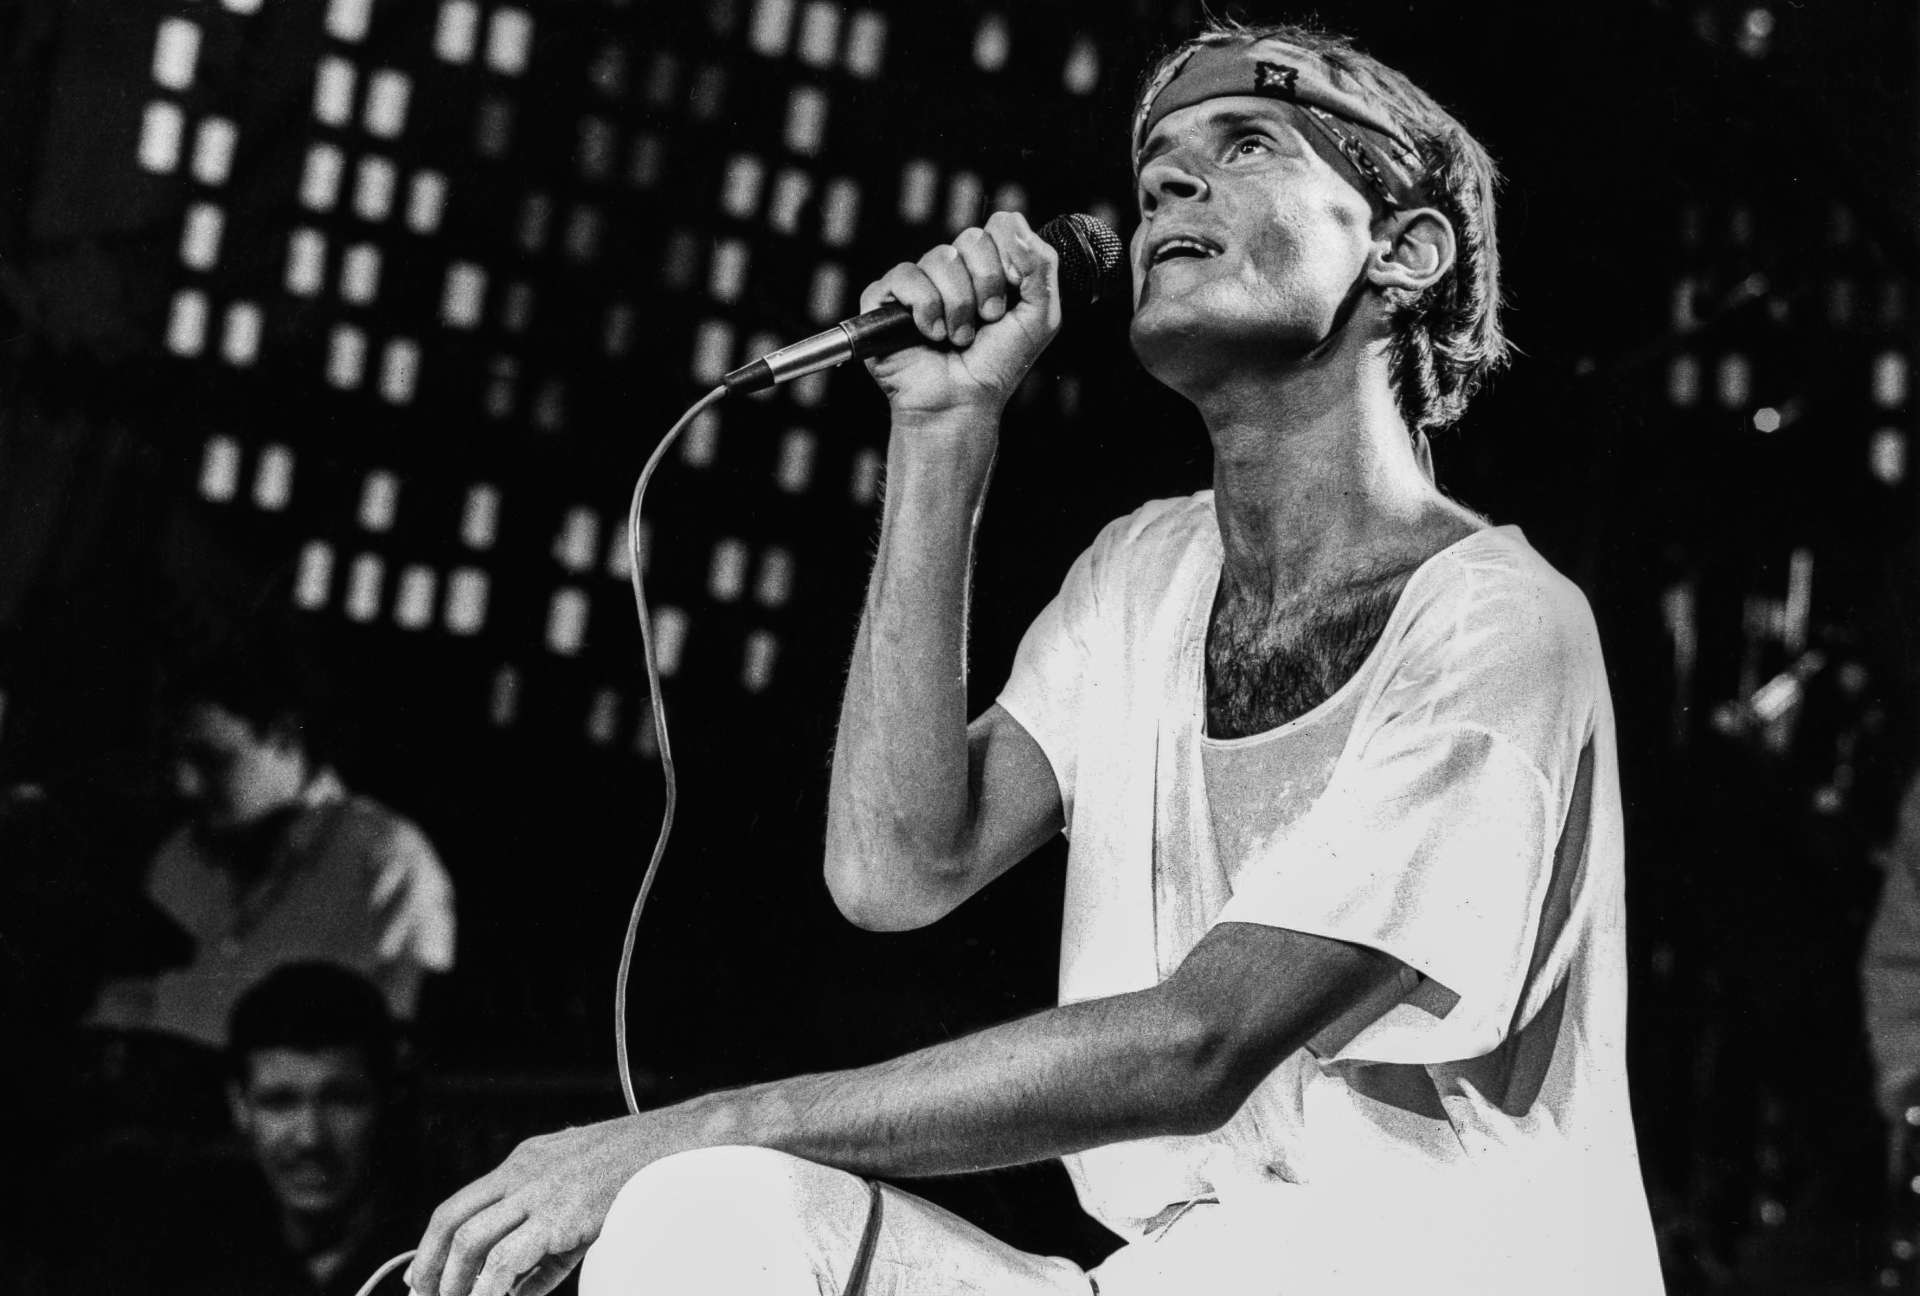 Sao Paulo 24 de outubro de 1988. O cantor e compositor Cazuza canta em show especial da TV Globo. (Foto ANA STEWART/AE) (Foto: ANA STEWART/AE)